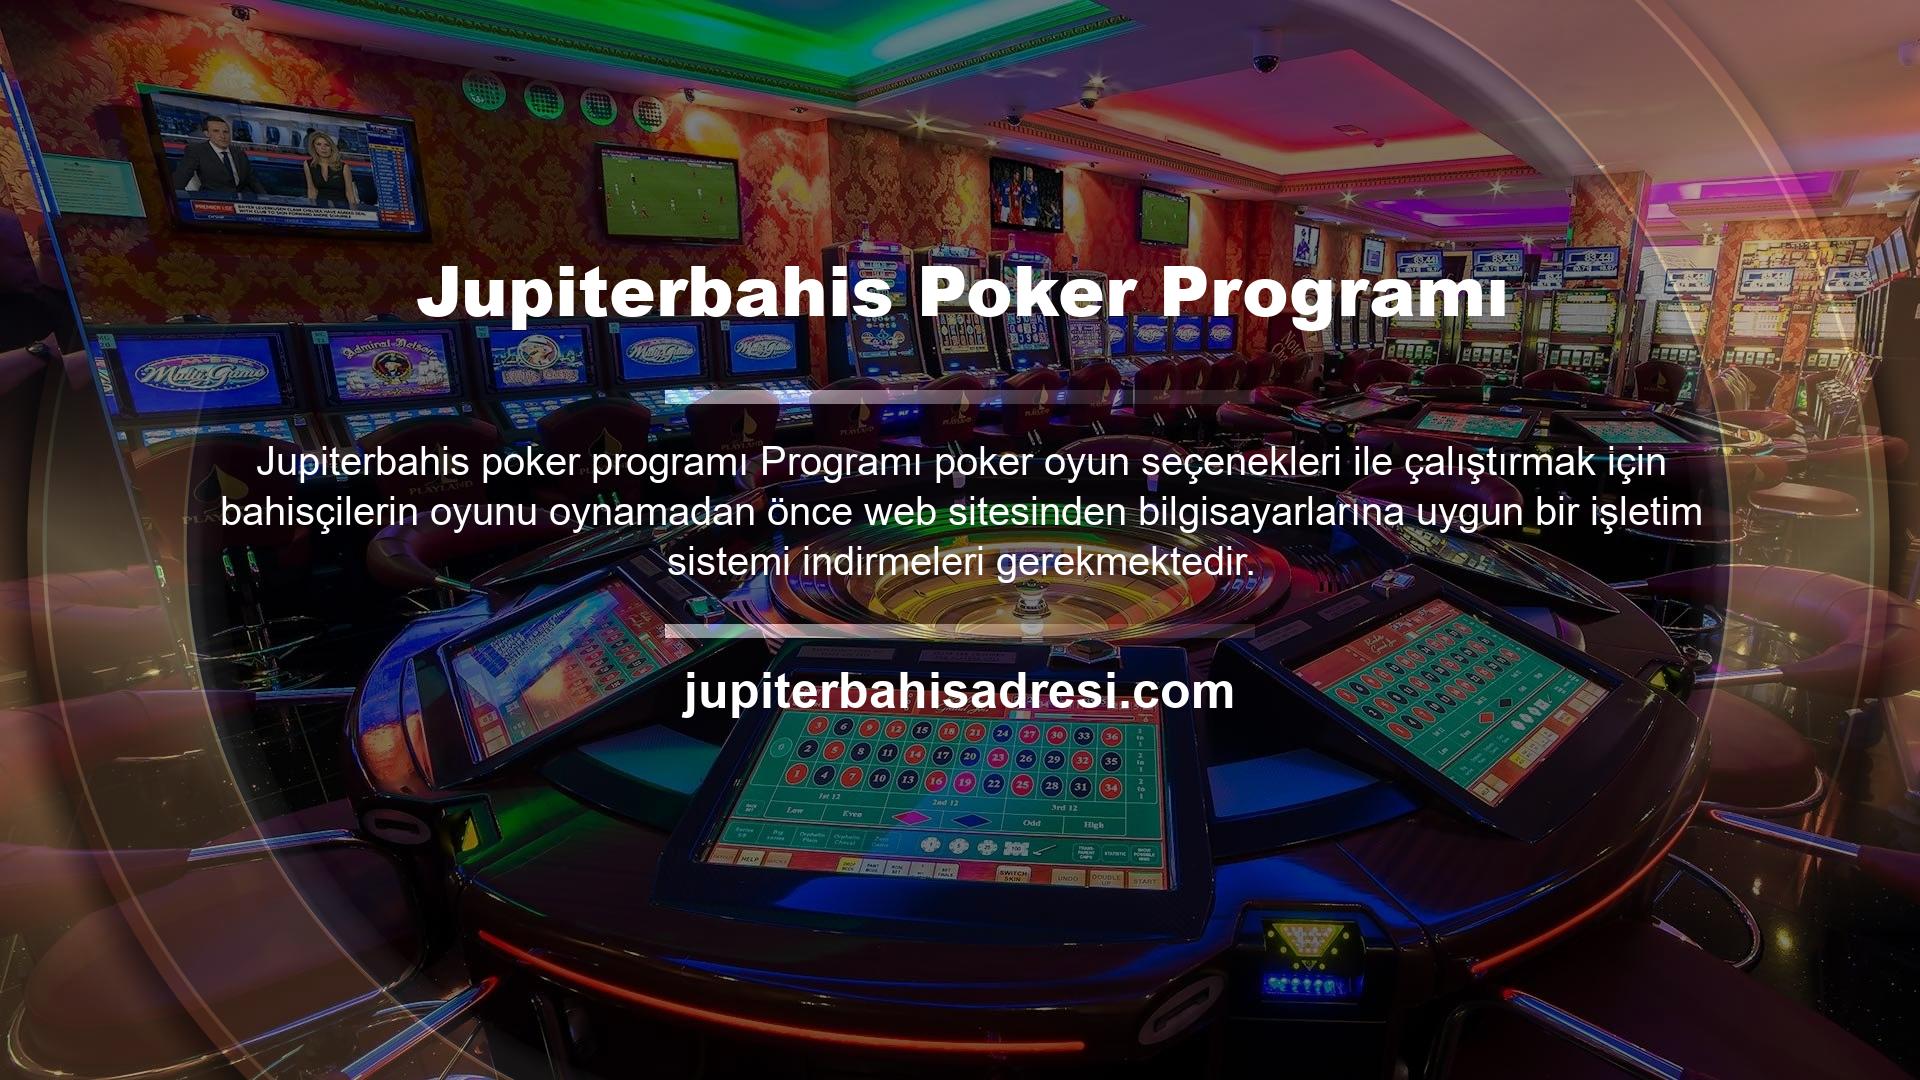 Jupiterbahis poker programının ücretli olup olmadığı, programı indirmeden önce bahisçilerin kafasındaki sorudur